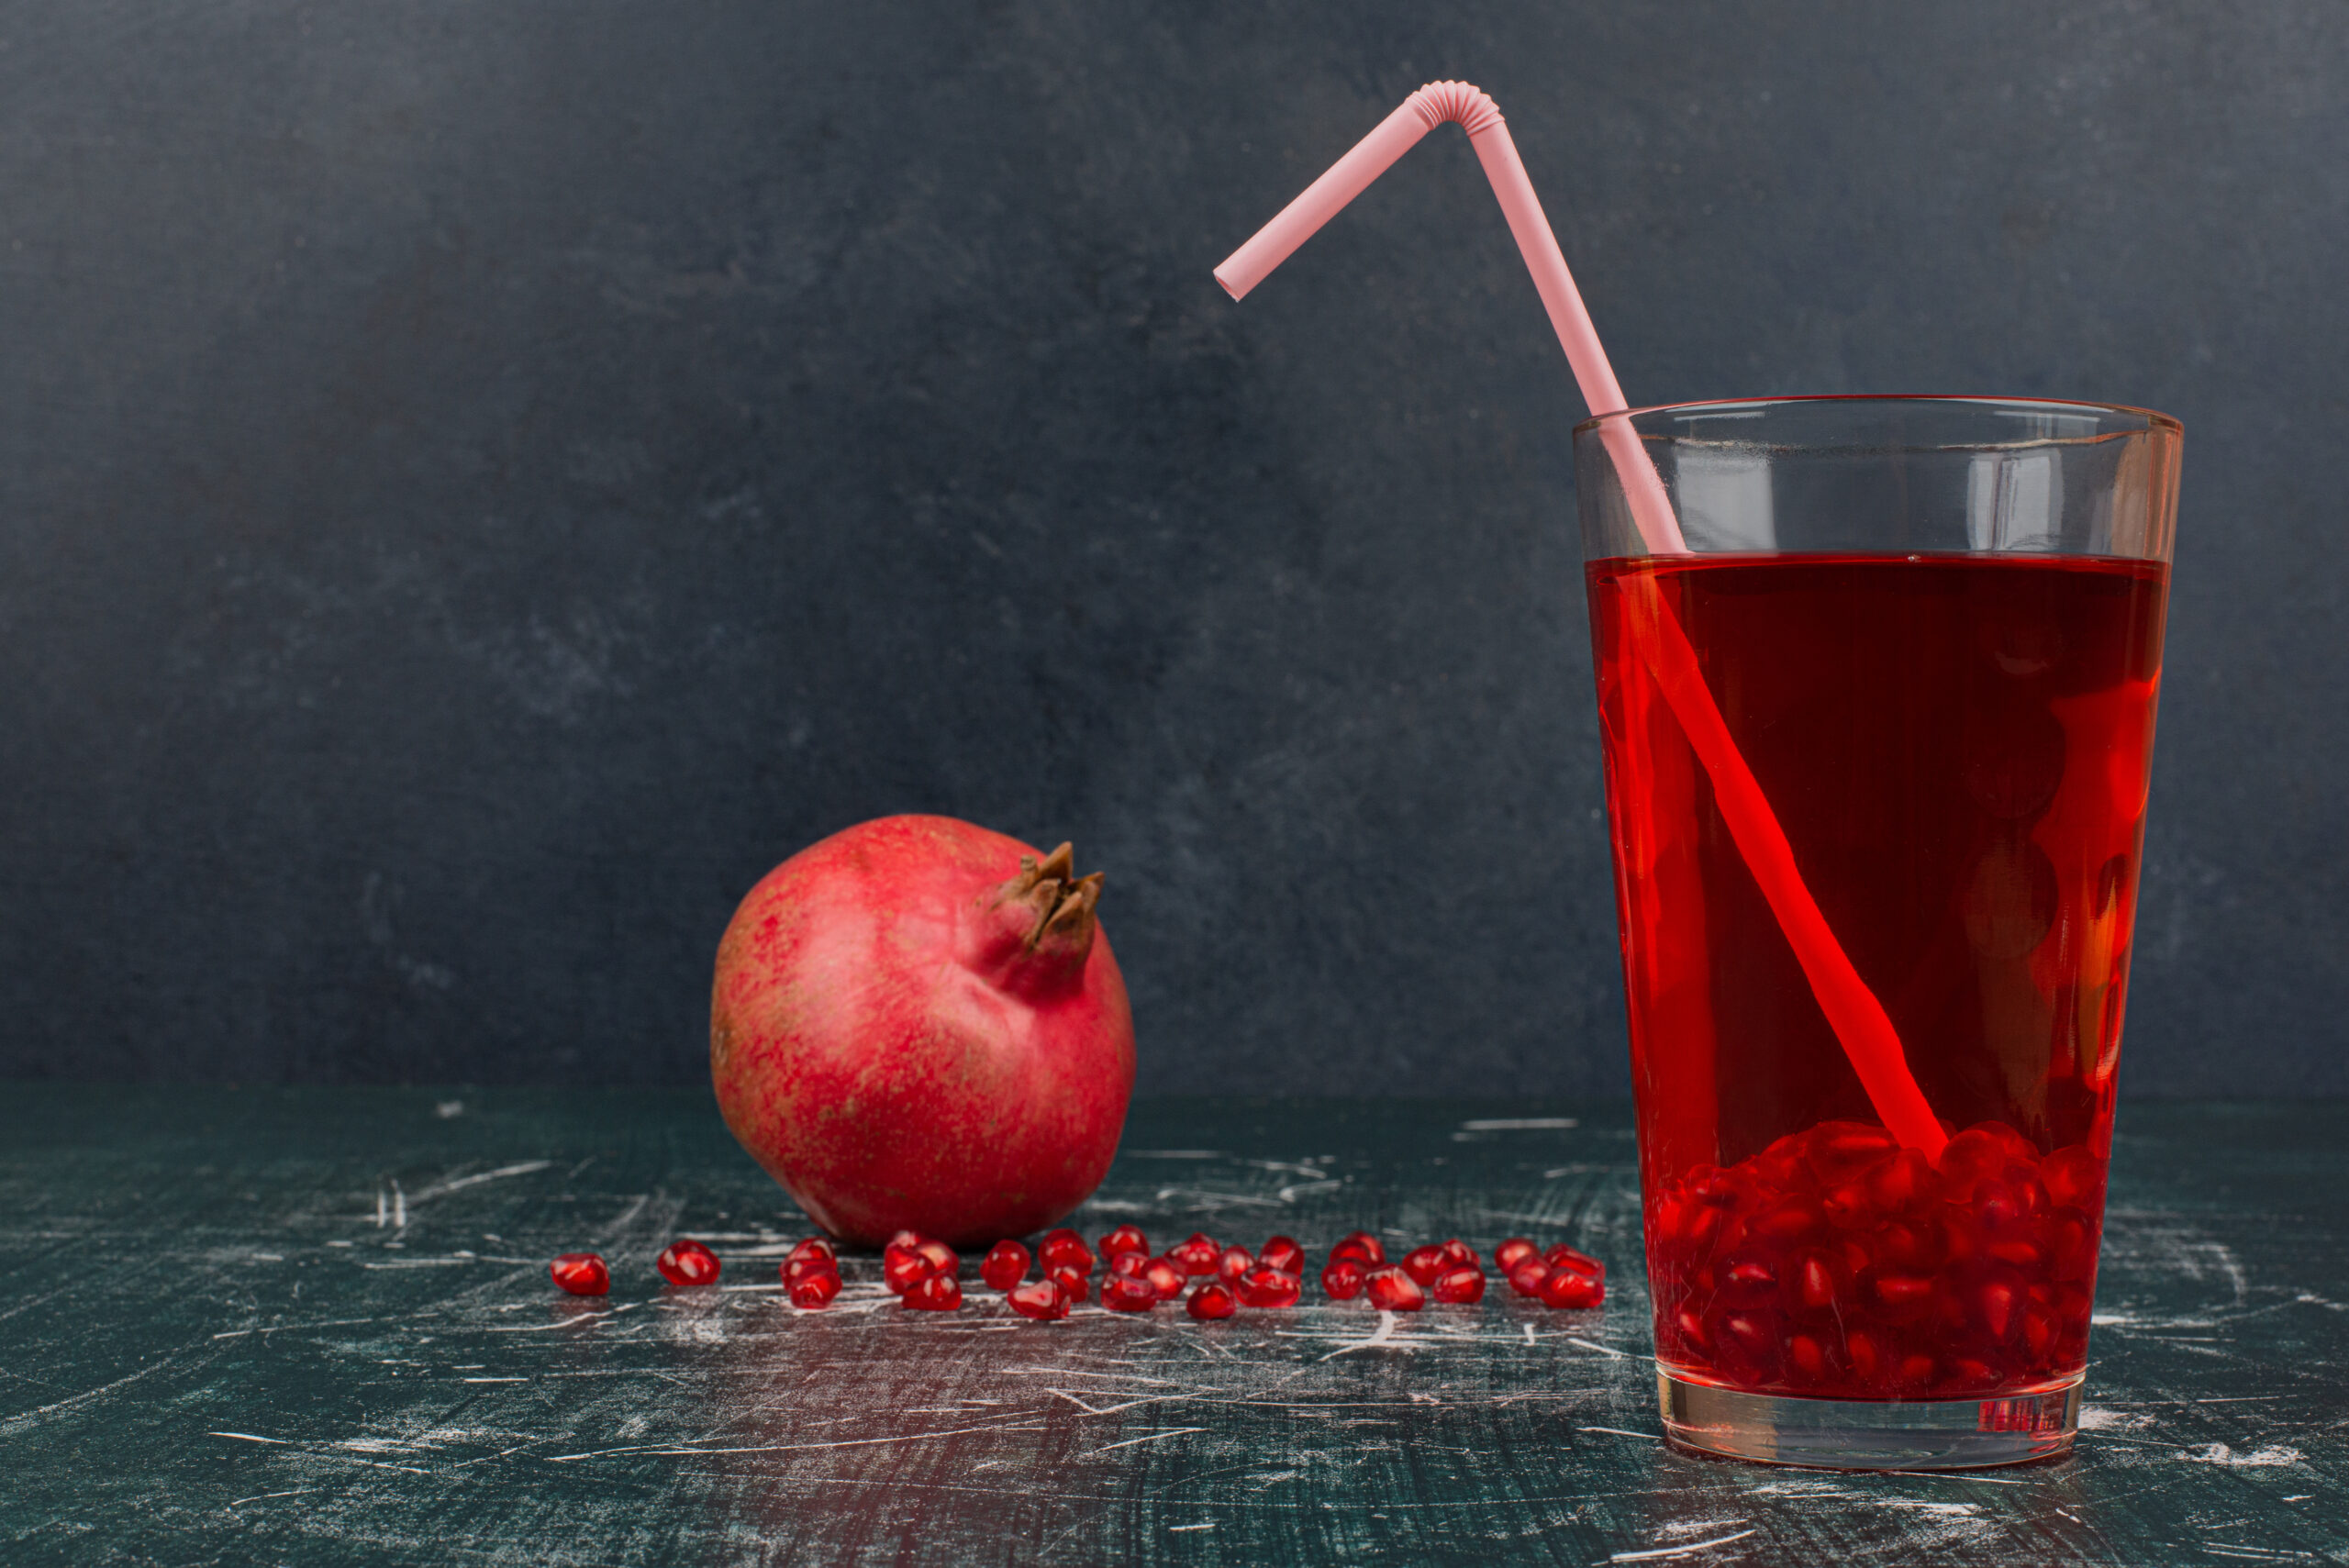 Does pomegranate juice make you poop?